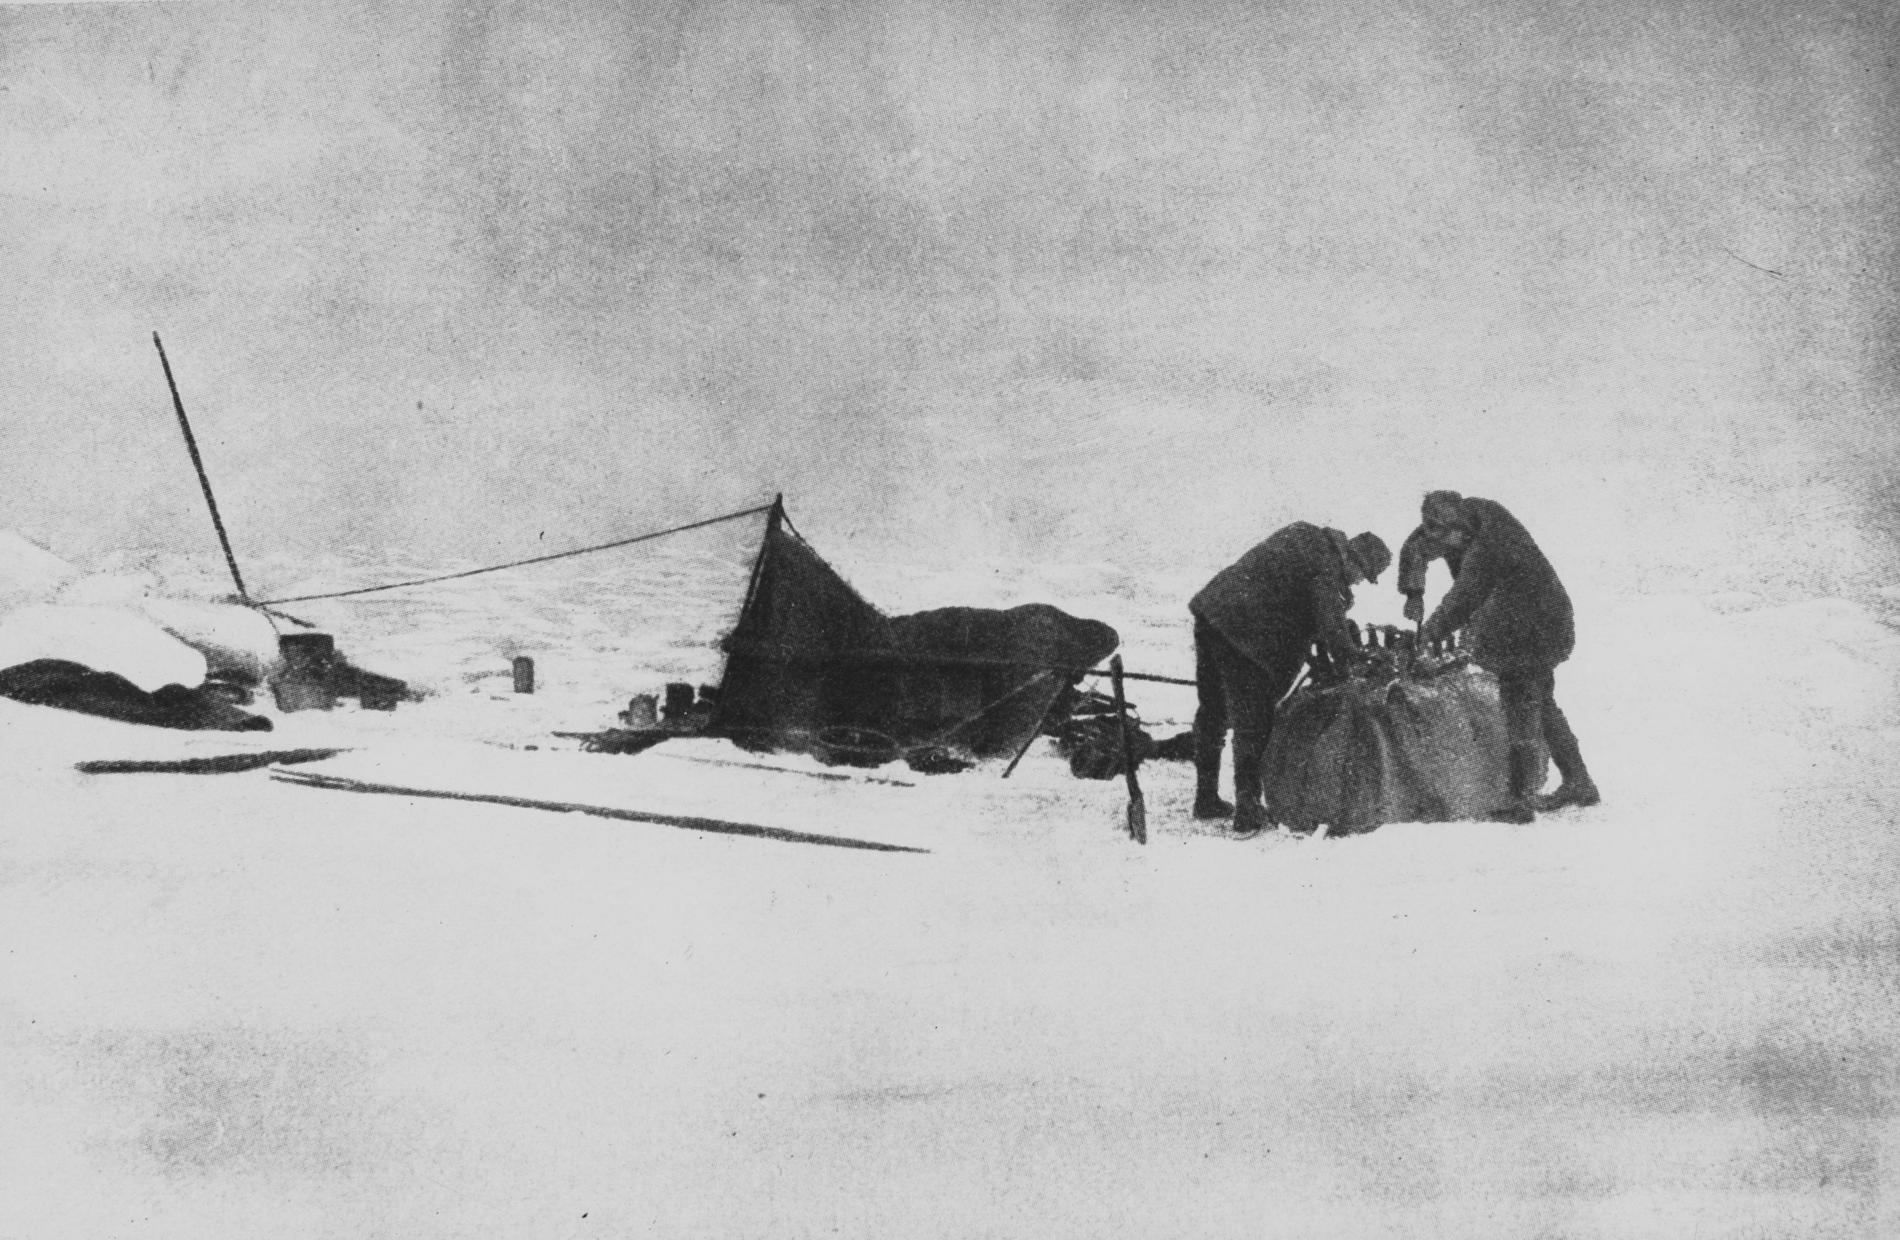 Luftballongen med namnet Örnen lyfte den 11 juni 1897 med Nordpolen som mål. Expeditionen misslyckades och upptäckarna Andrée, Frænkel och Strindberg omkom.